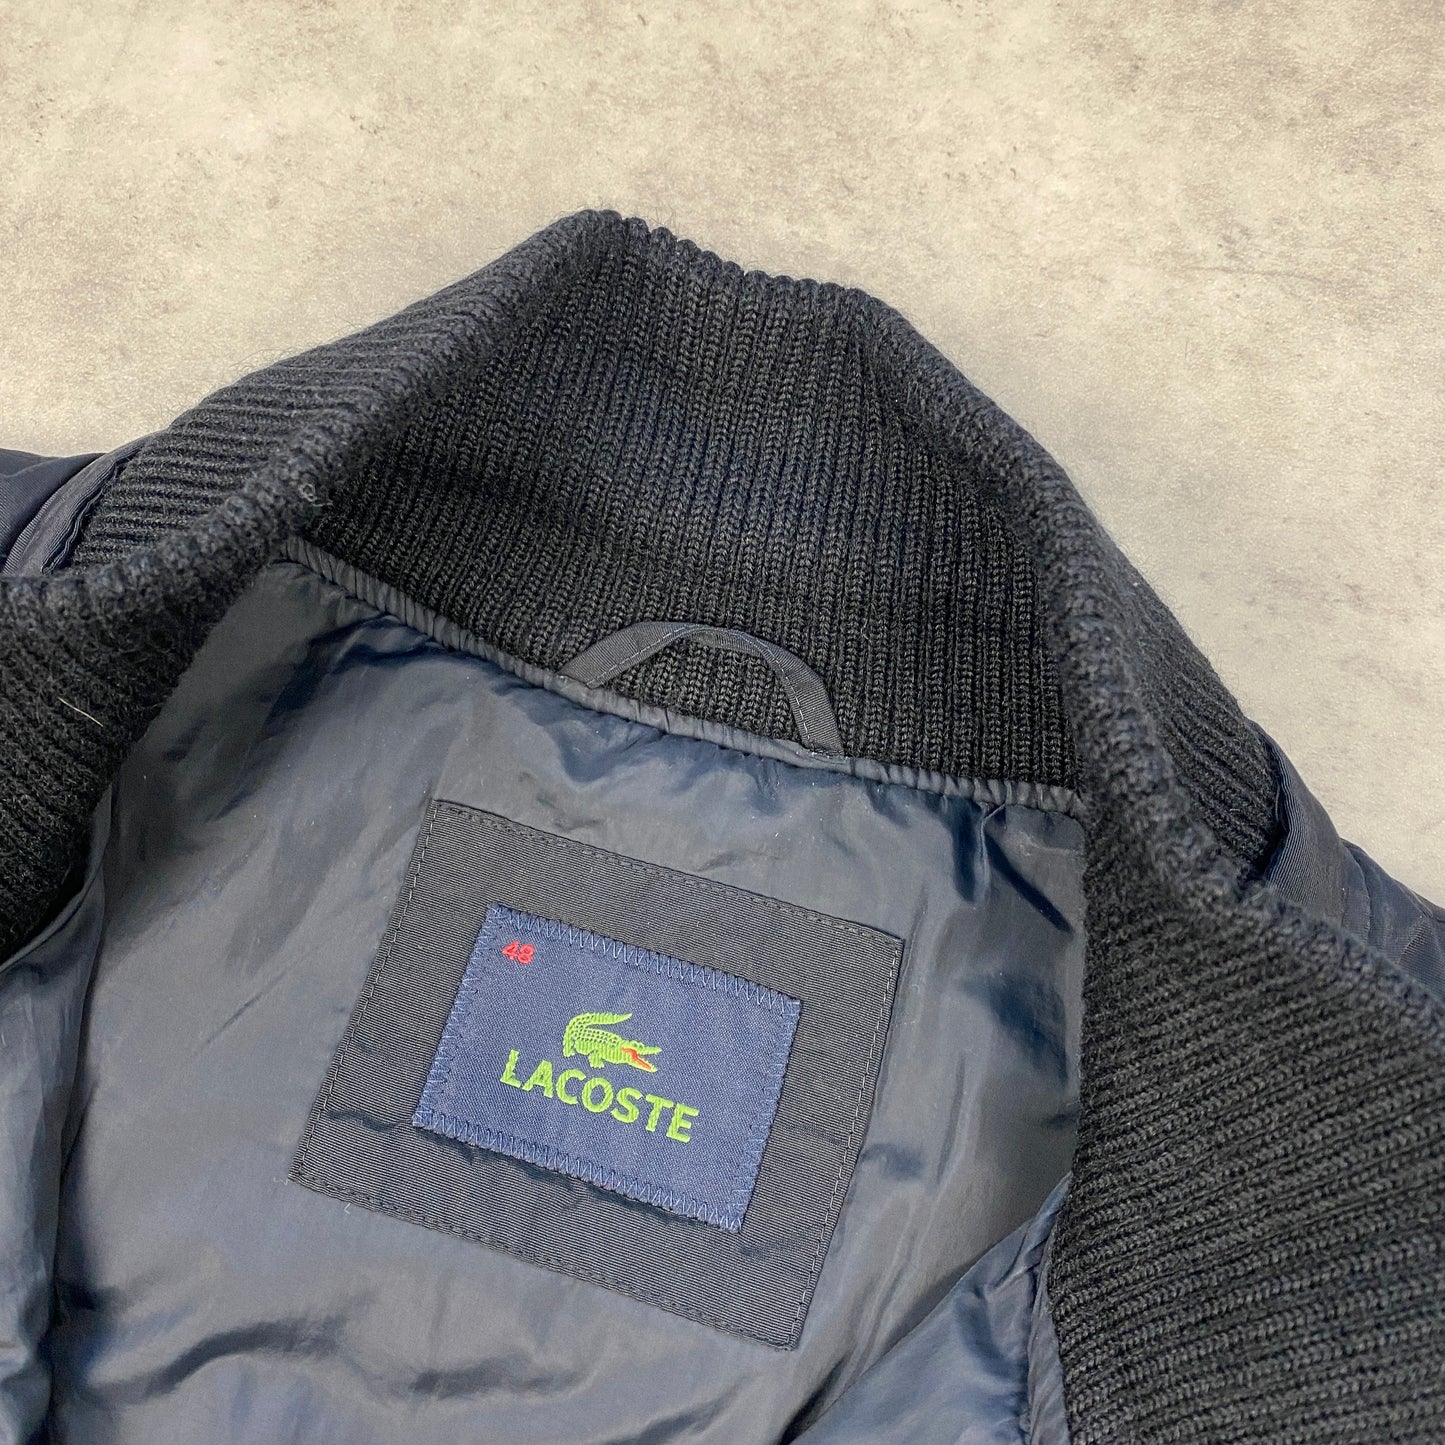 Lacoste jacket (M-L)